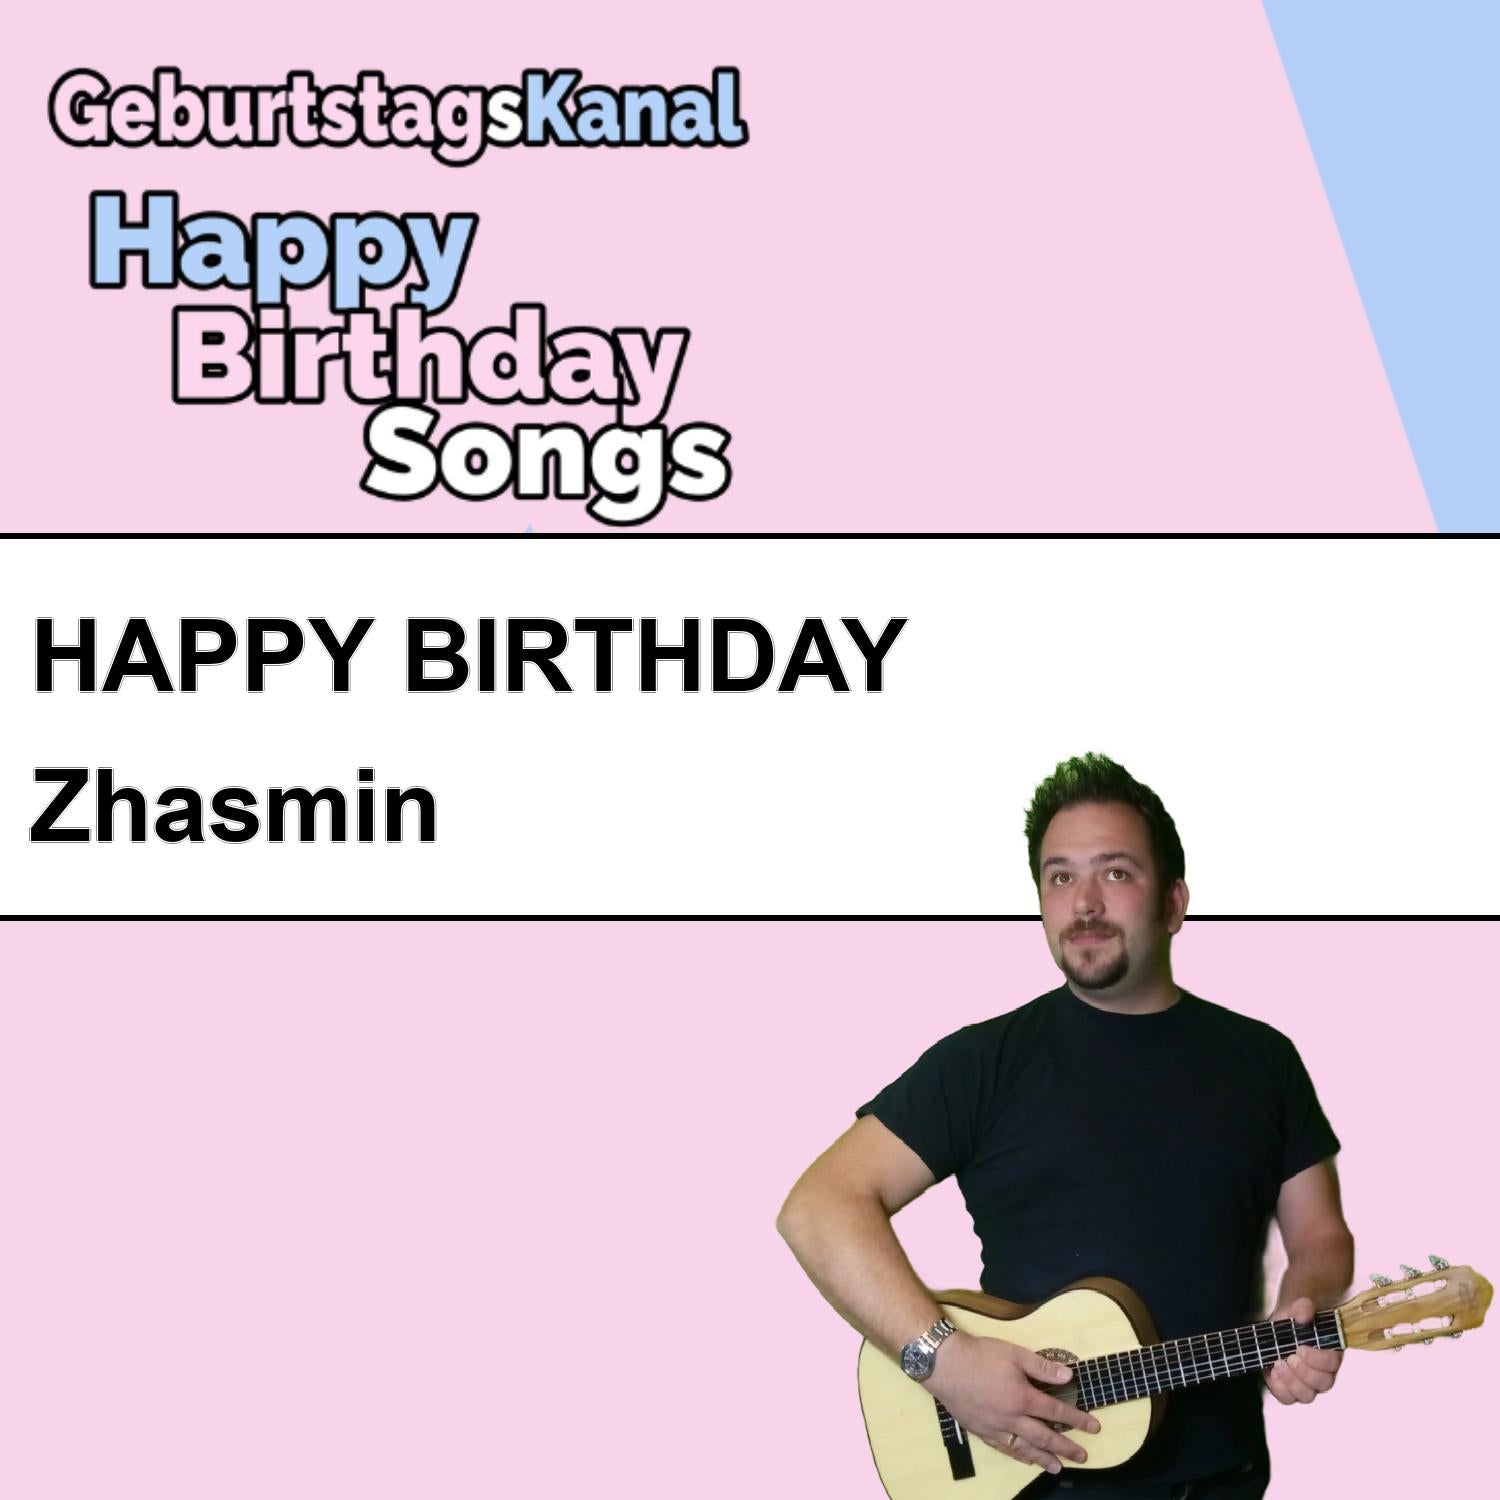 Produktbild Happy Birthday to you Zhasmin mit Wunschgrußbotschaft